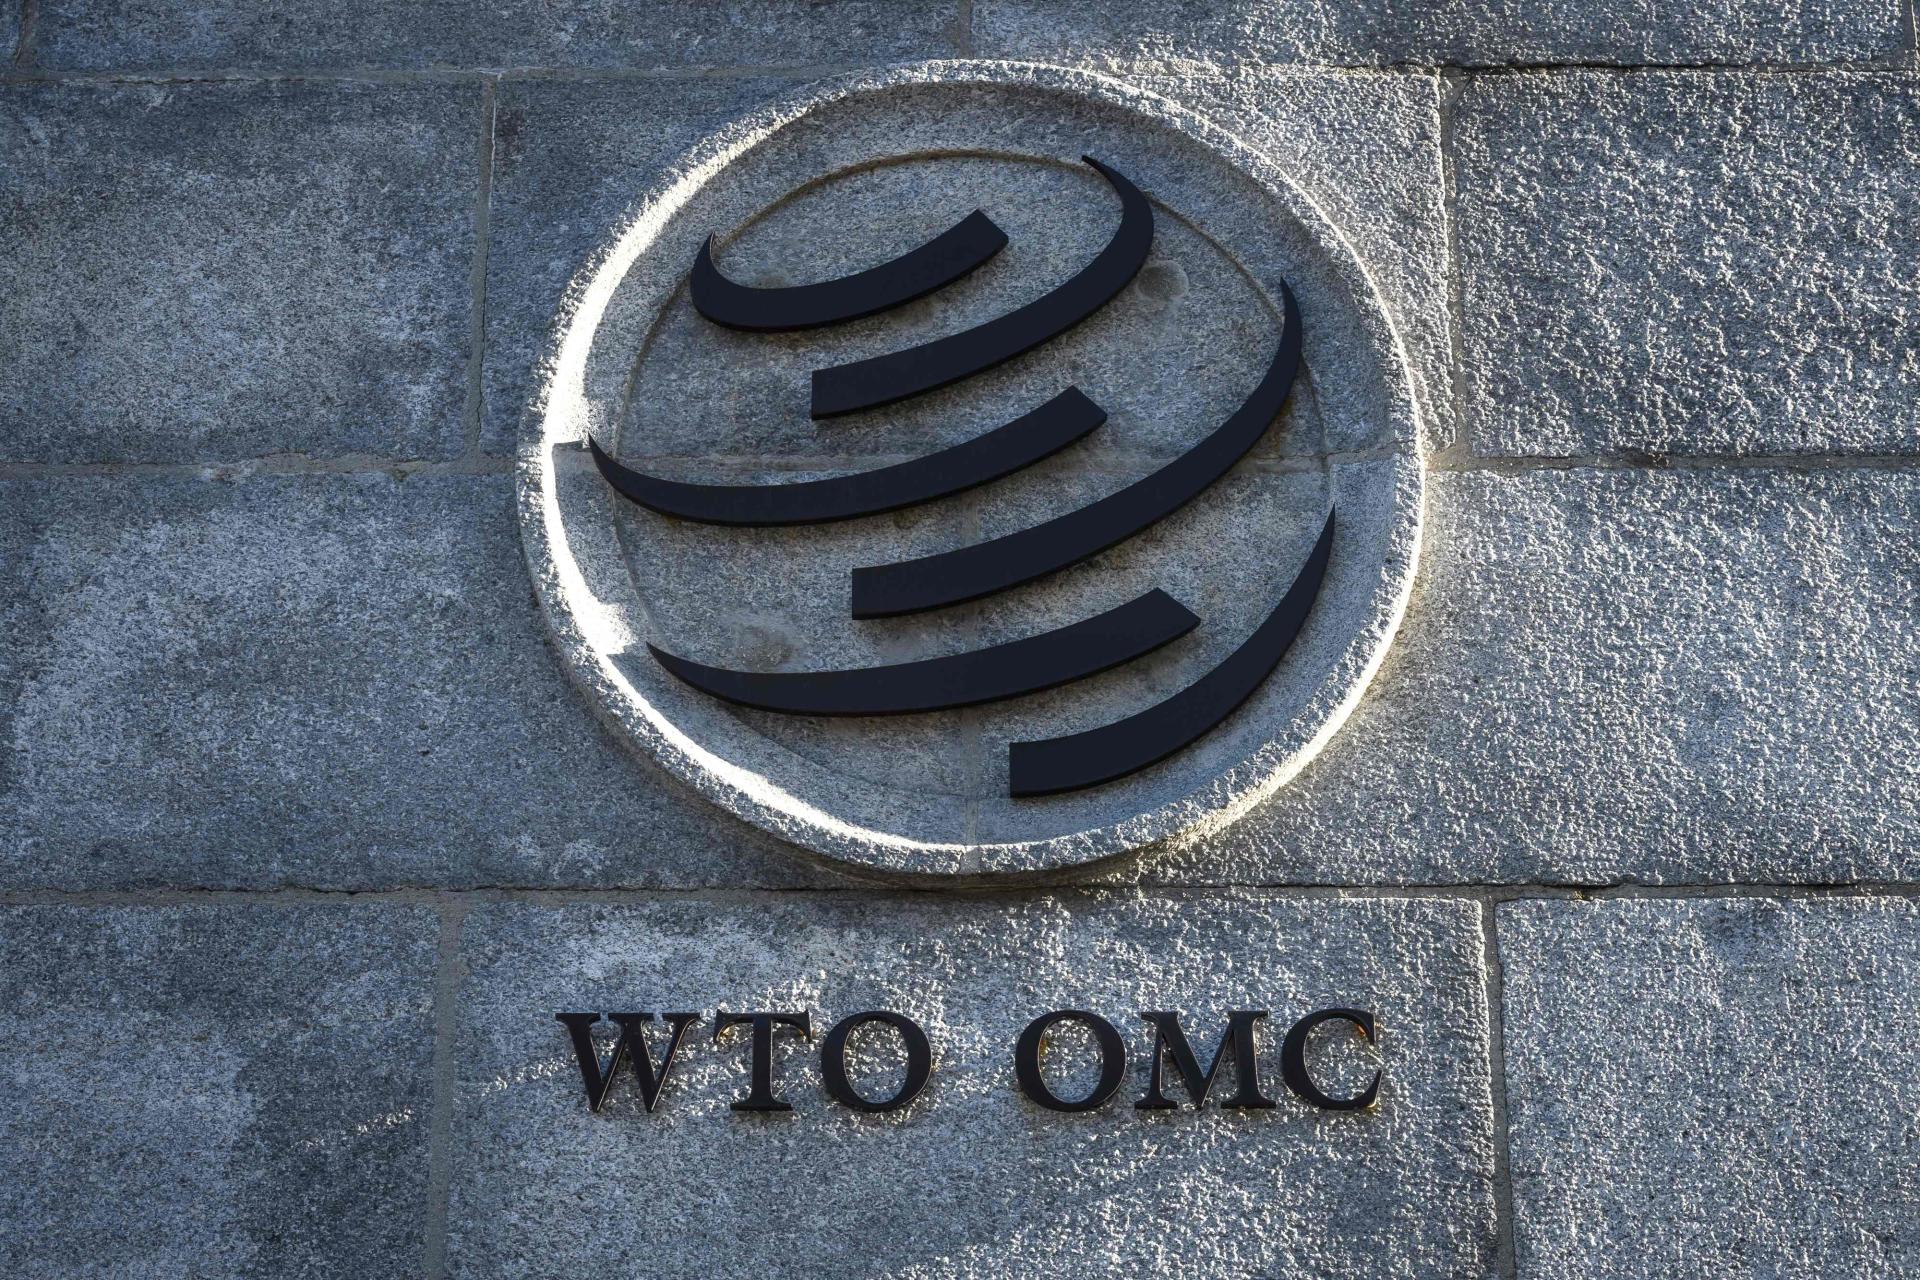 L'OMC à sa douzième Conférence ministérielle